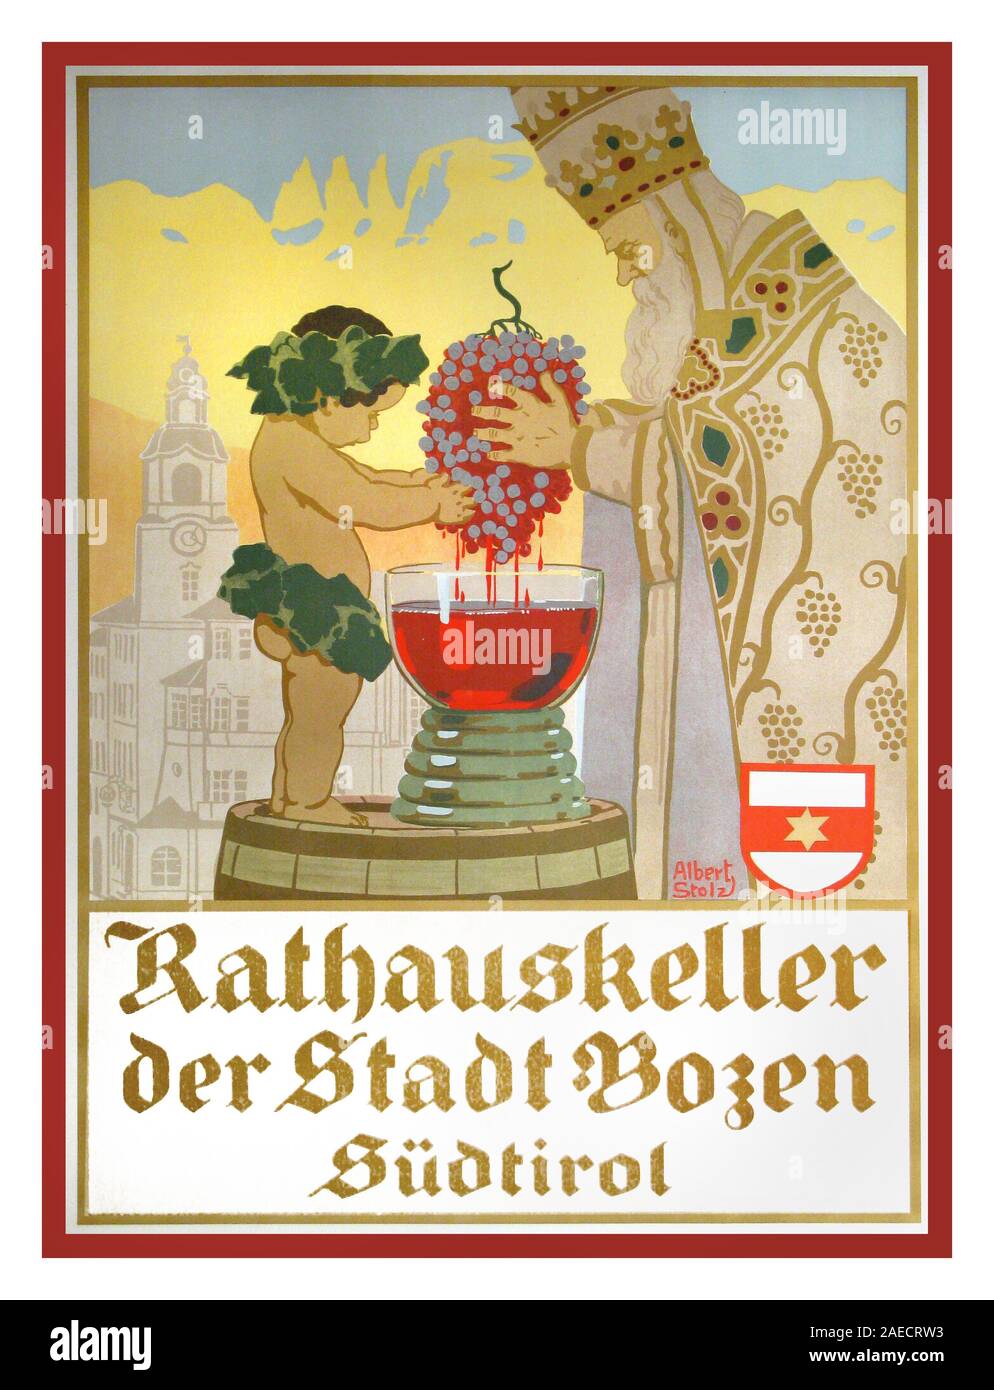 Albert Stolz 1900 Vin Vintage poster par Albert Stolz Rathauskeller, vintage wine affiche faite dans le style Arts and Crafts, lithographie, Lorenz Imprimer Fränzel, Bolzano manifeste 'Hôtel de ville de la ville de Bolzano", 1910 Stampa Lorenz Fränzel, Bolzano Banque D'Images